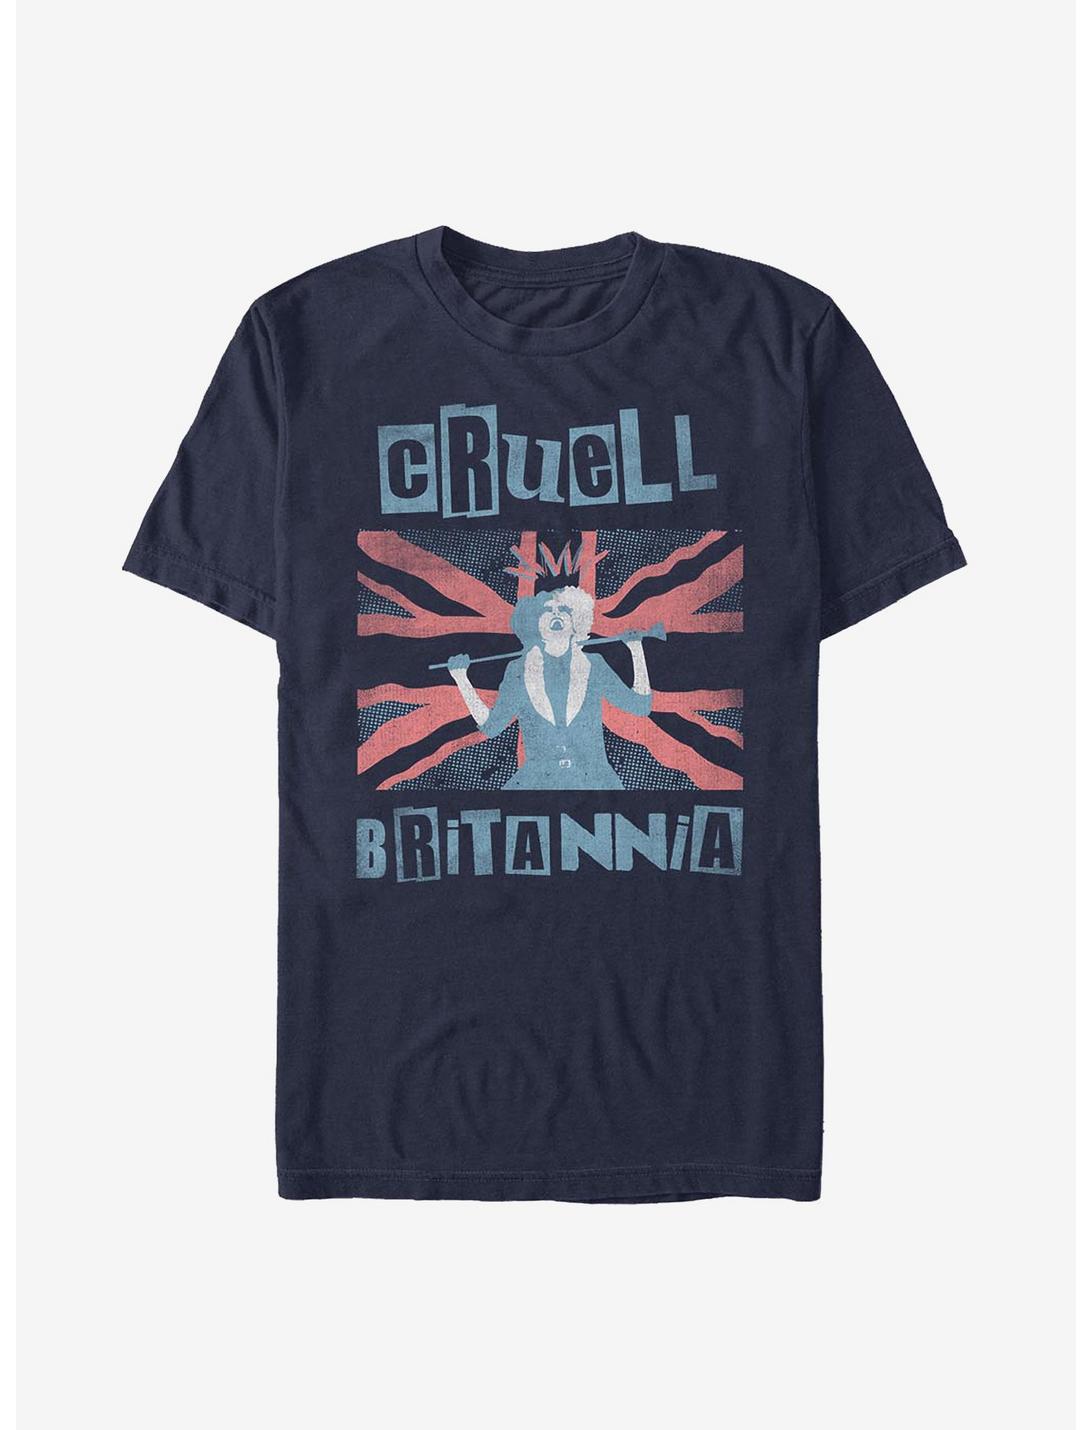 Disney Cruella Britannia T-Shirt, NAVY, hi-res